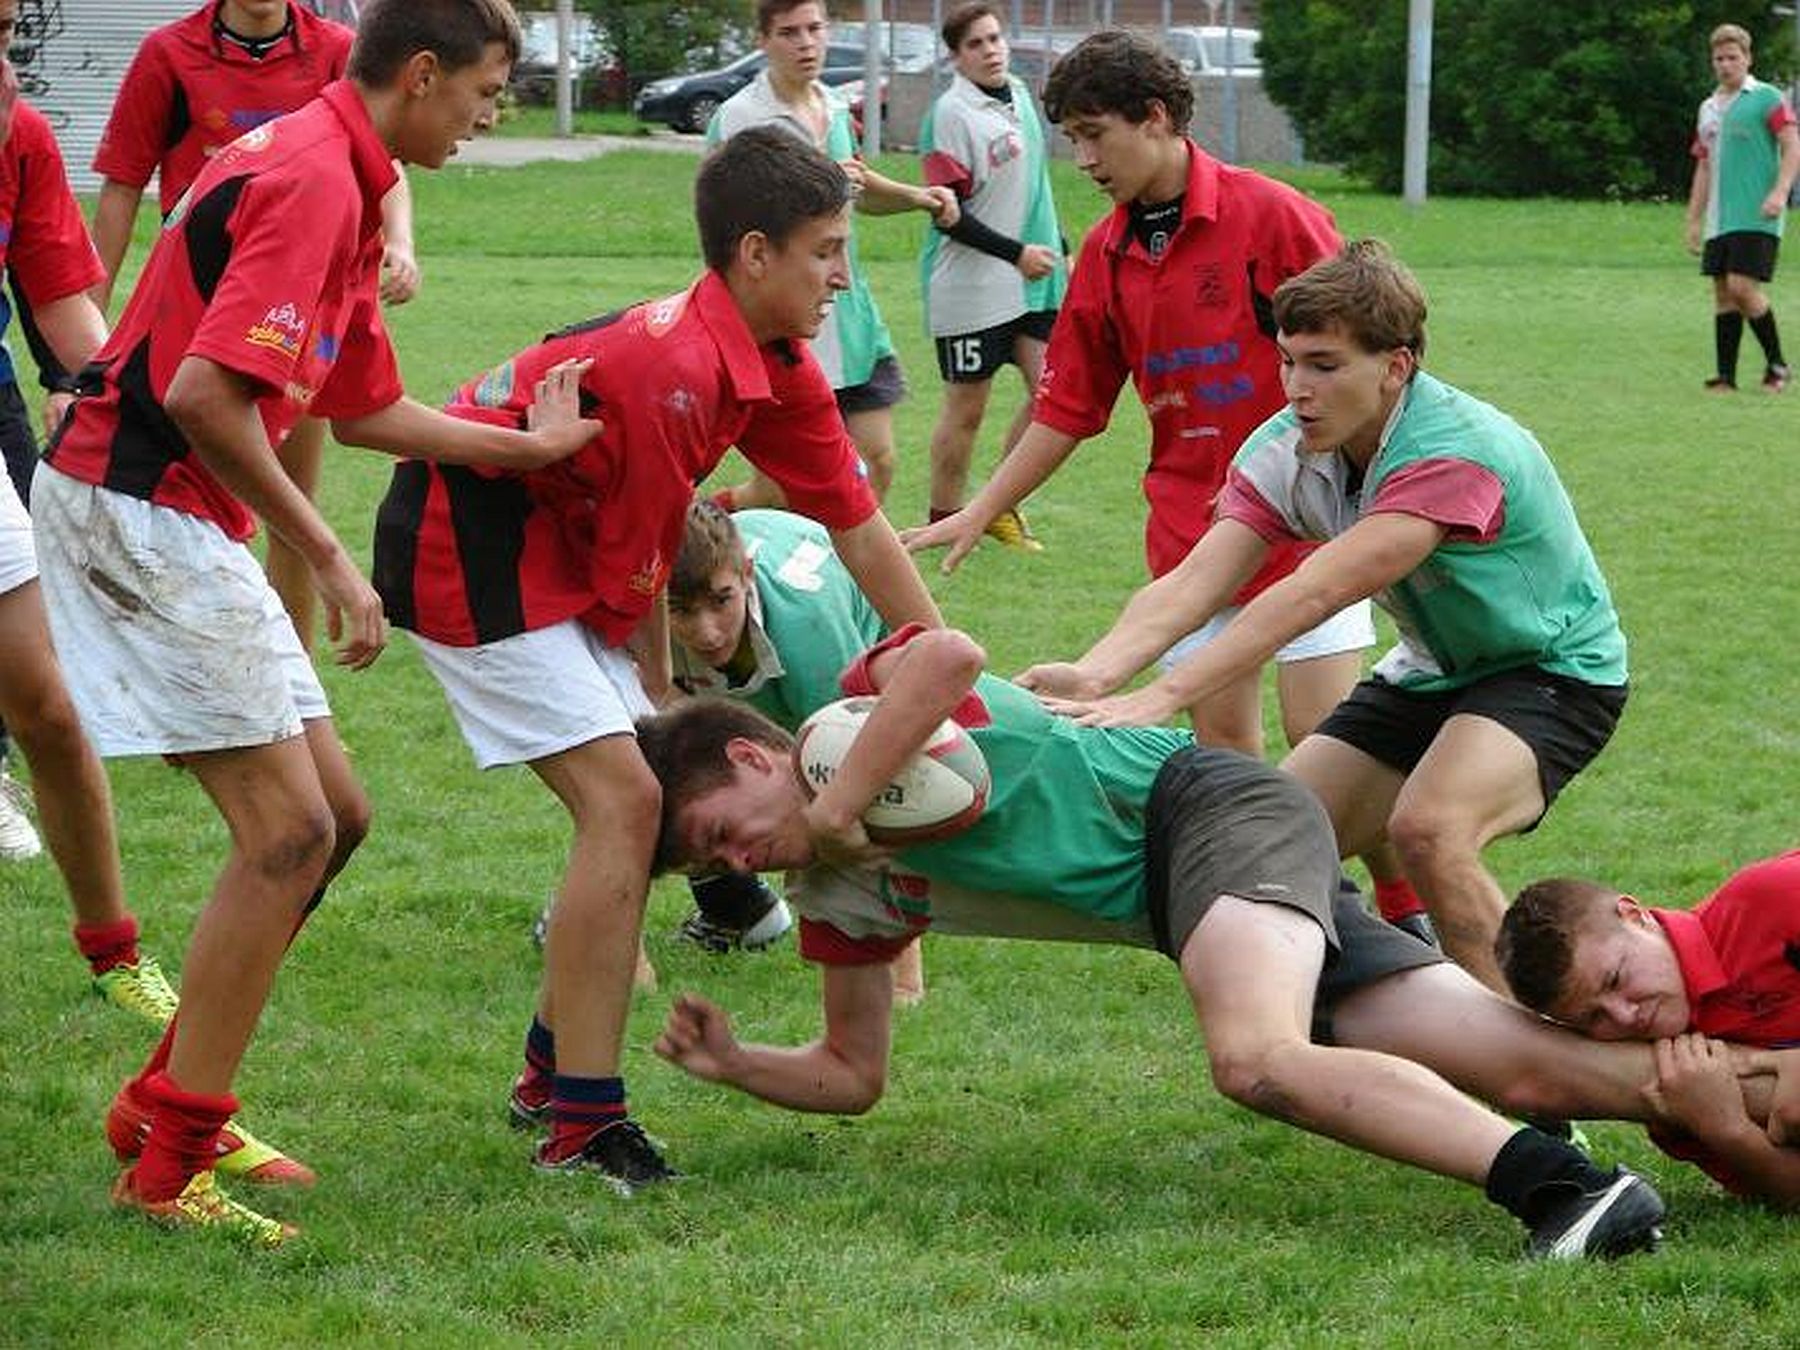 A Fehérvár Rugby Club valamennyi korosztályos csapata szerepelt a hétvégén